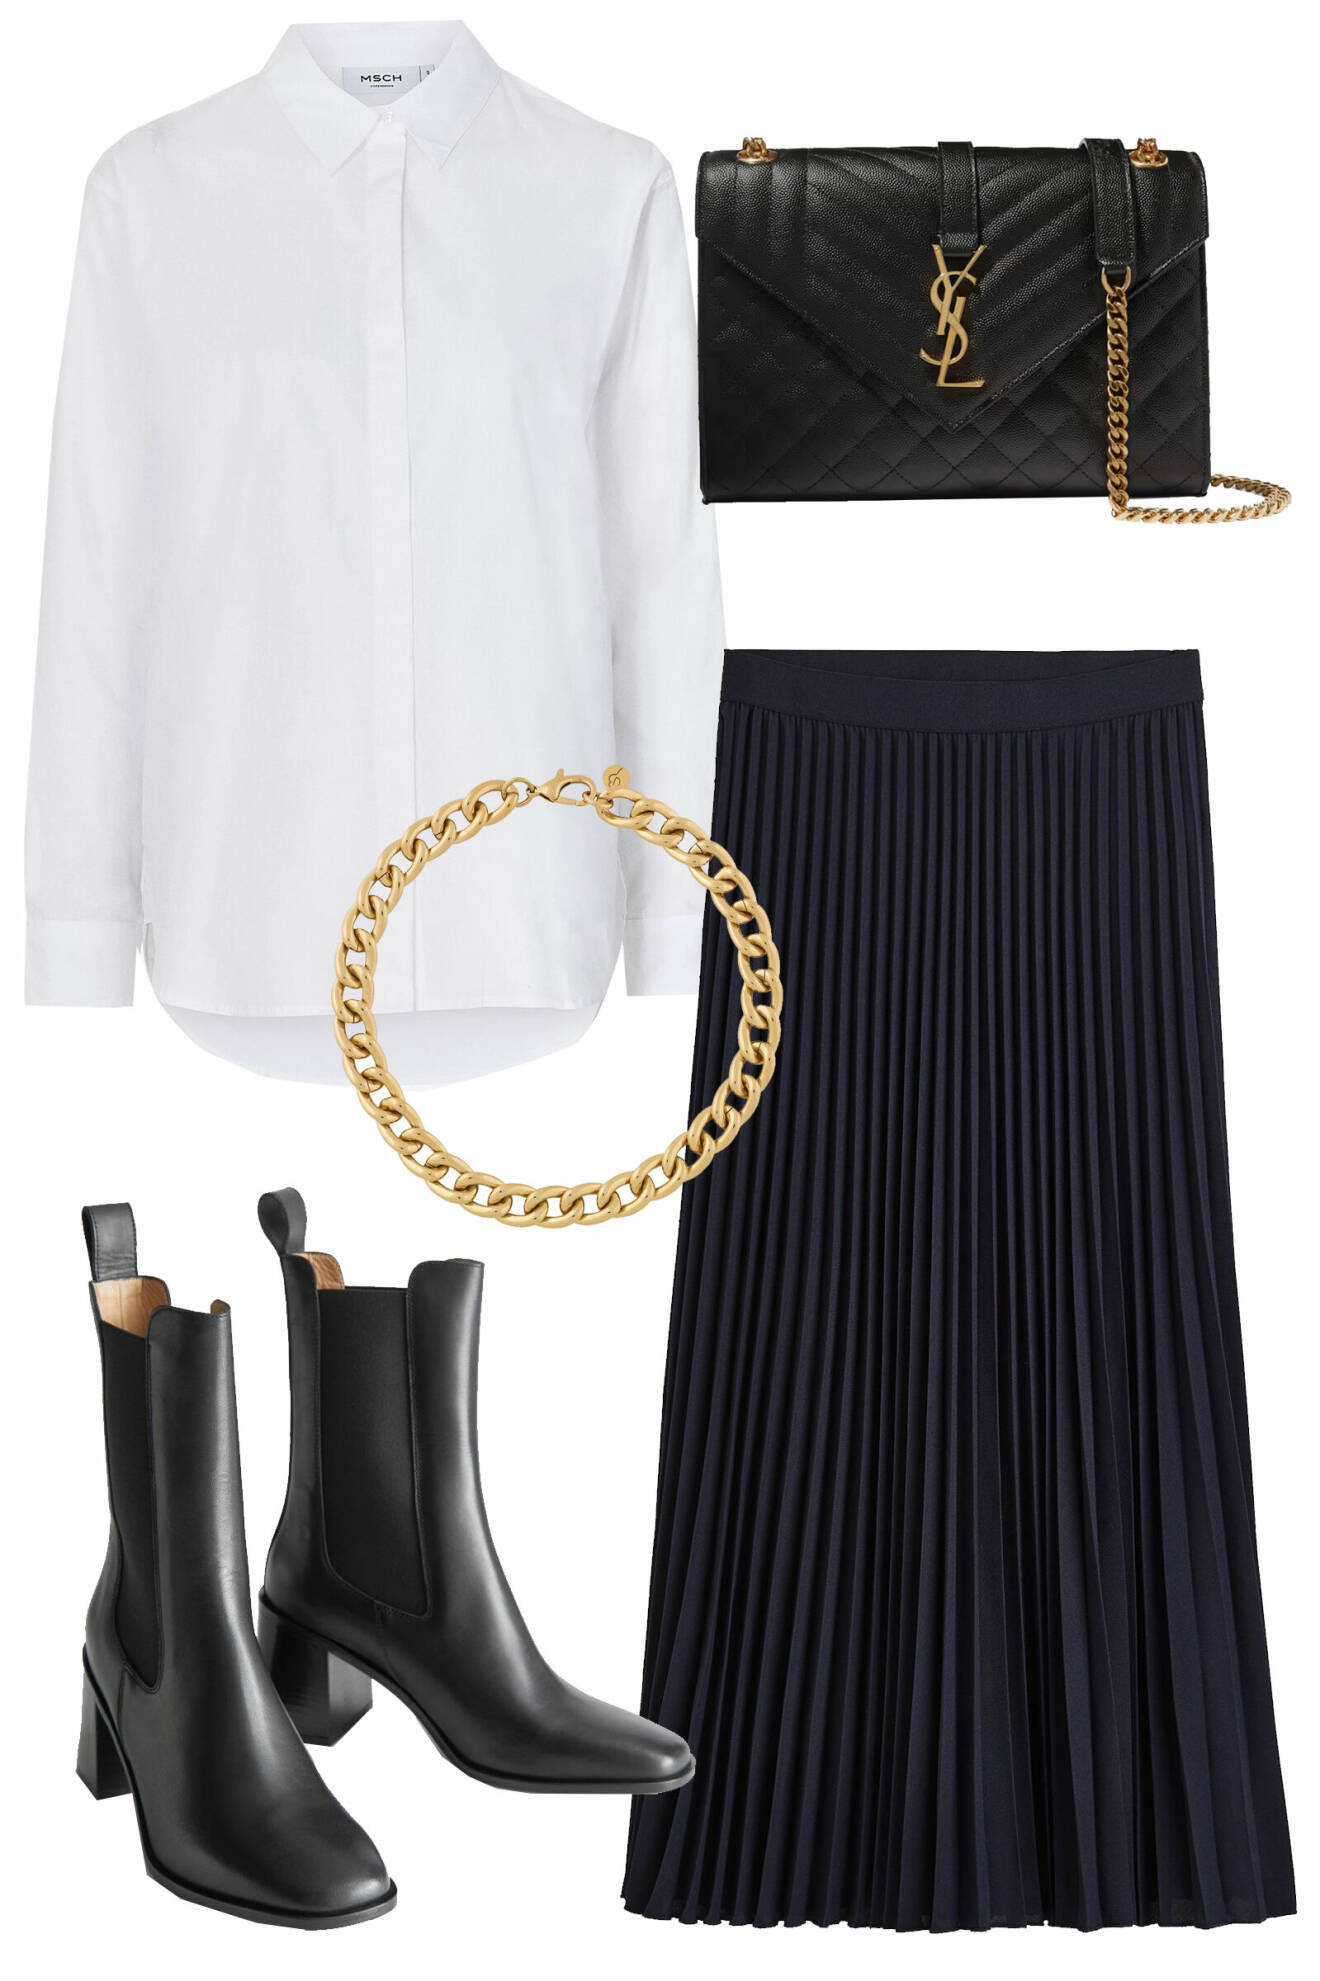 snygg outfit till jobb och fest med vit skjorta, mörkblå plisserad midikjol, svarta ankelboots, YSL-väska och kedjehalsband i guld